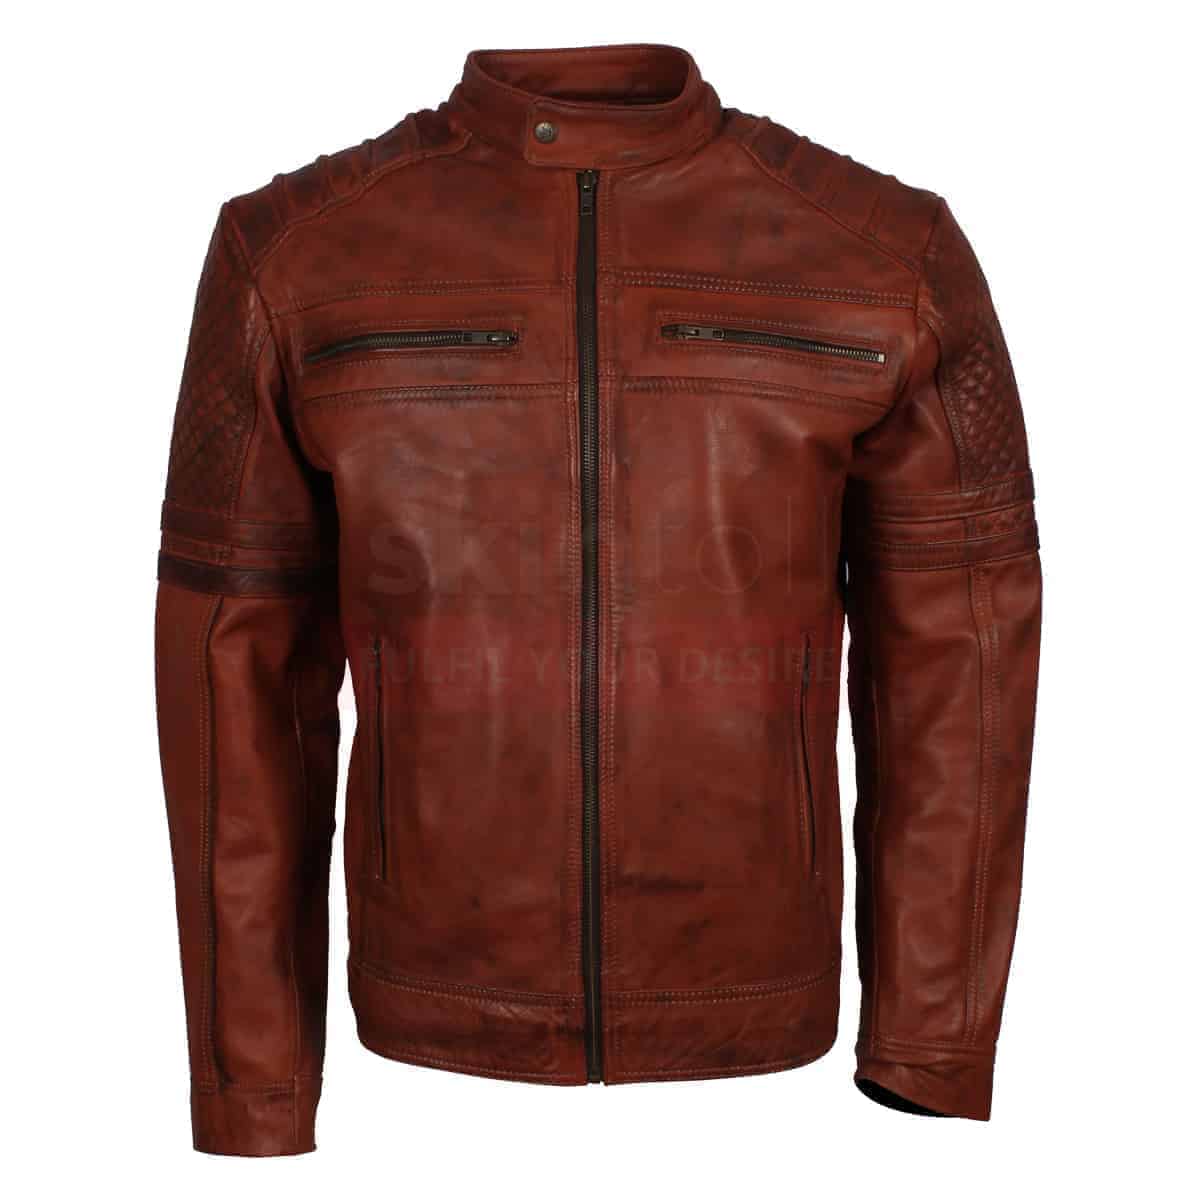 Vintage Leather Jackets | Vintage Leather Bomber Jacket | UK Jackets